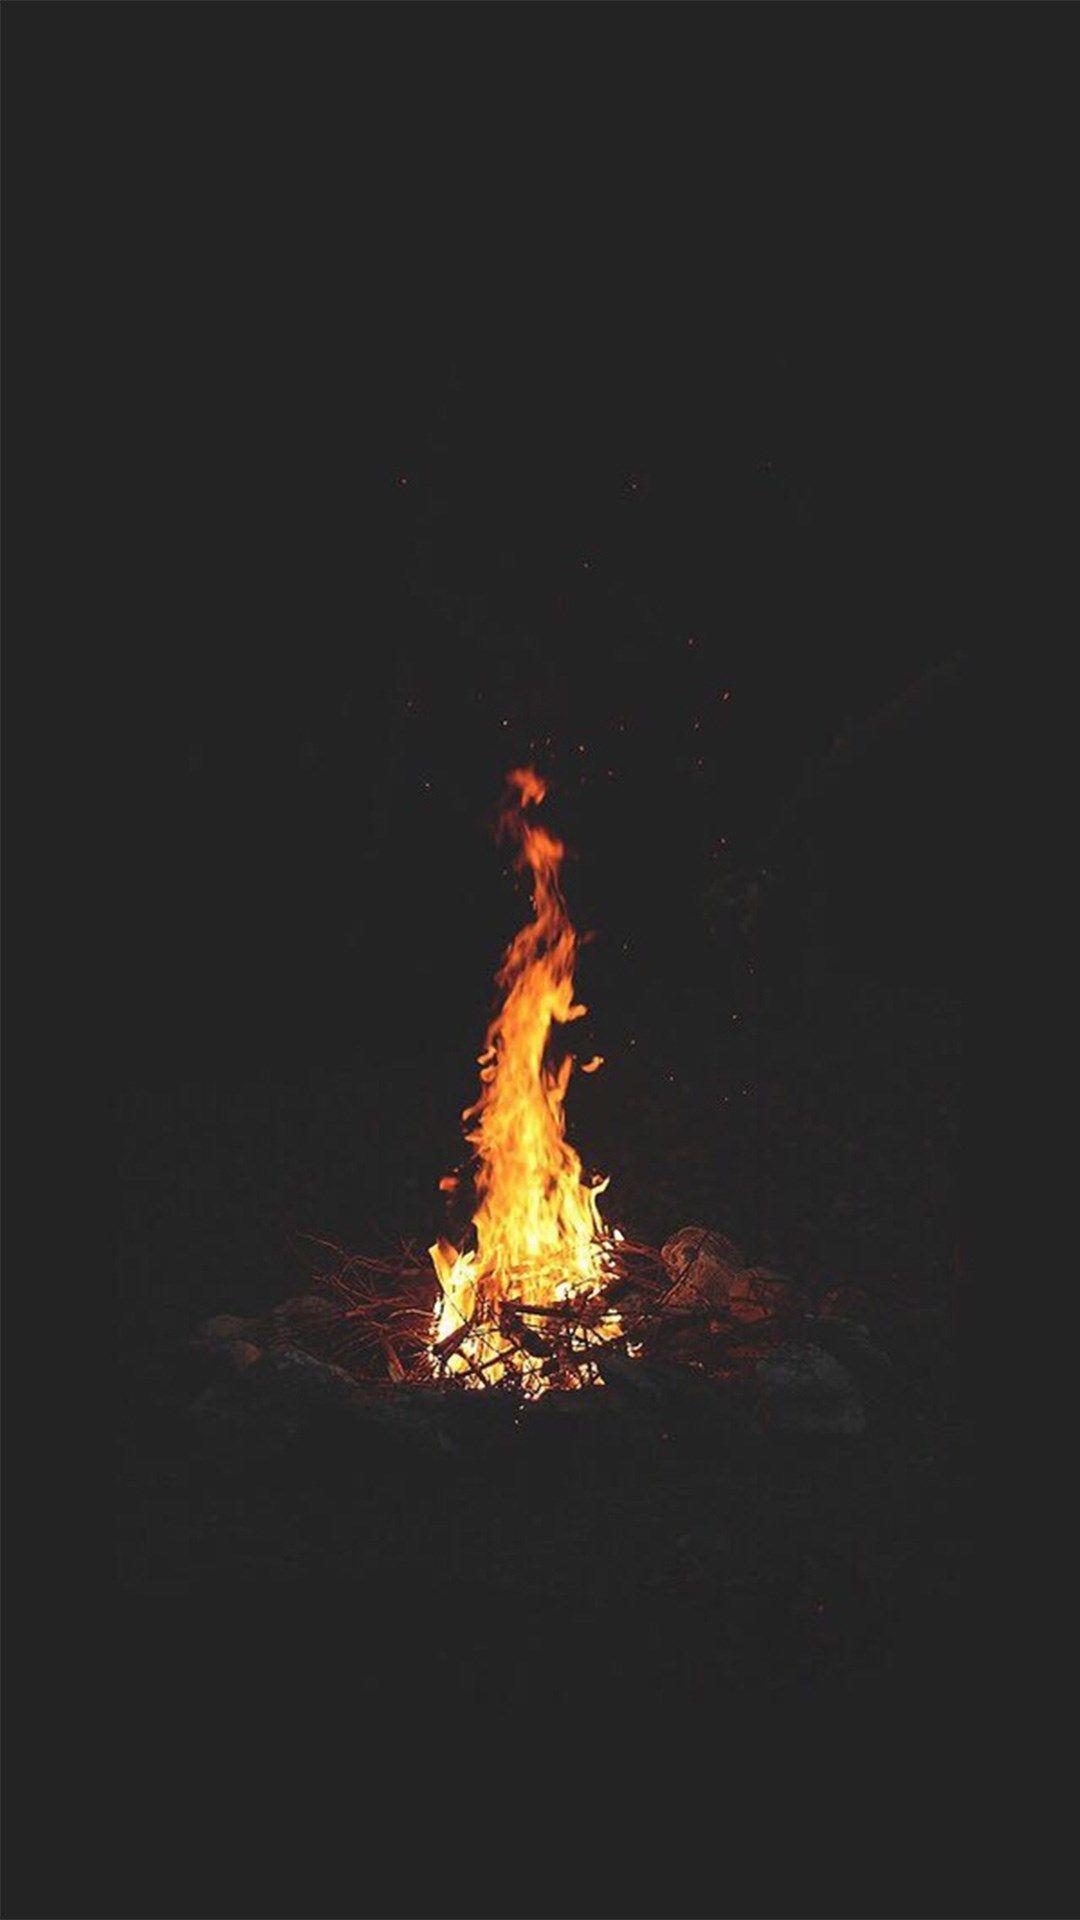 Hình nền iPhone 6 1080x1920 Dark Night Campfire Shiny Sky View.  Hình nền